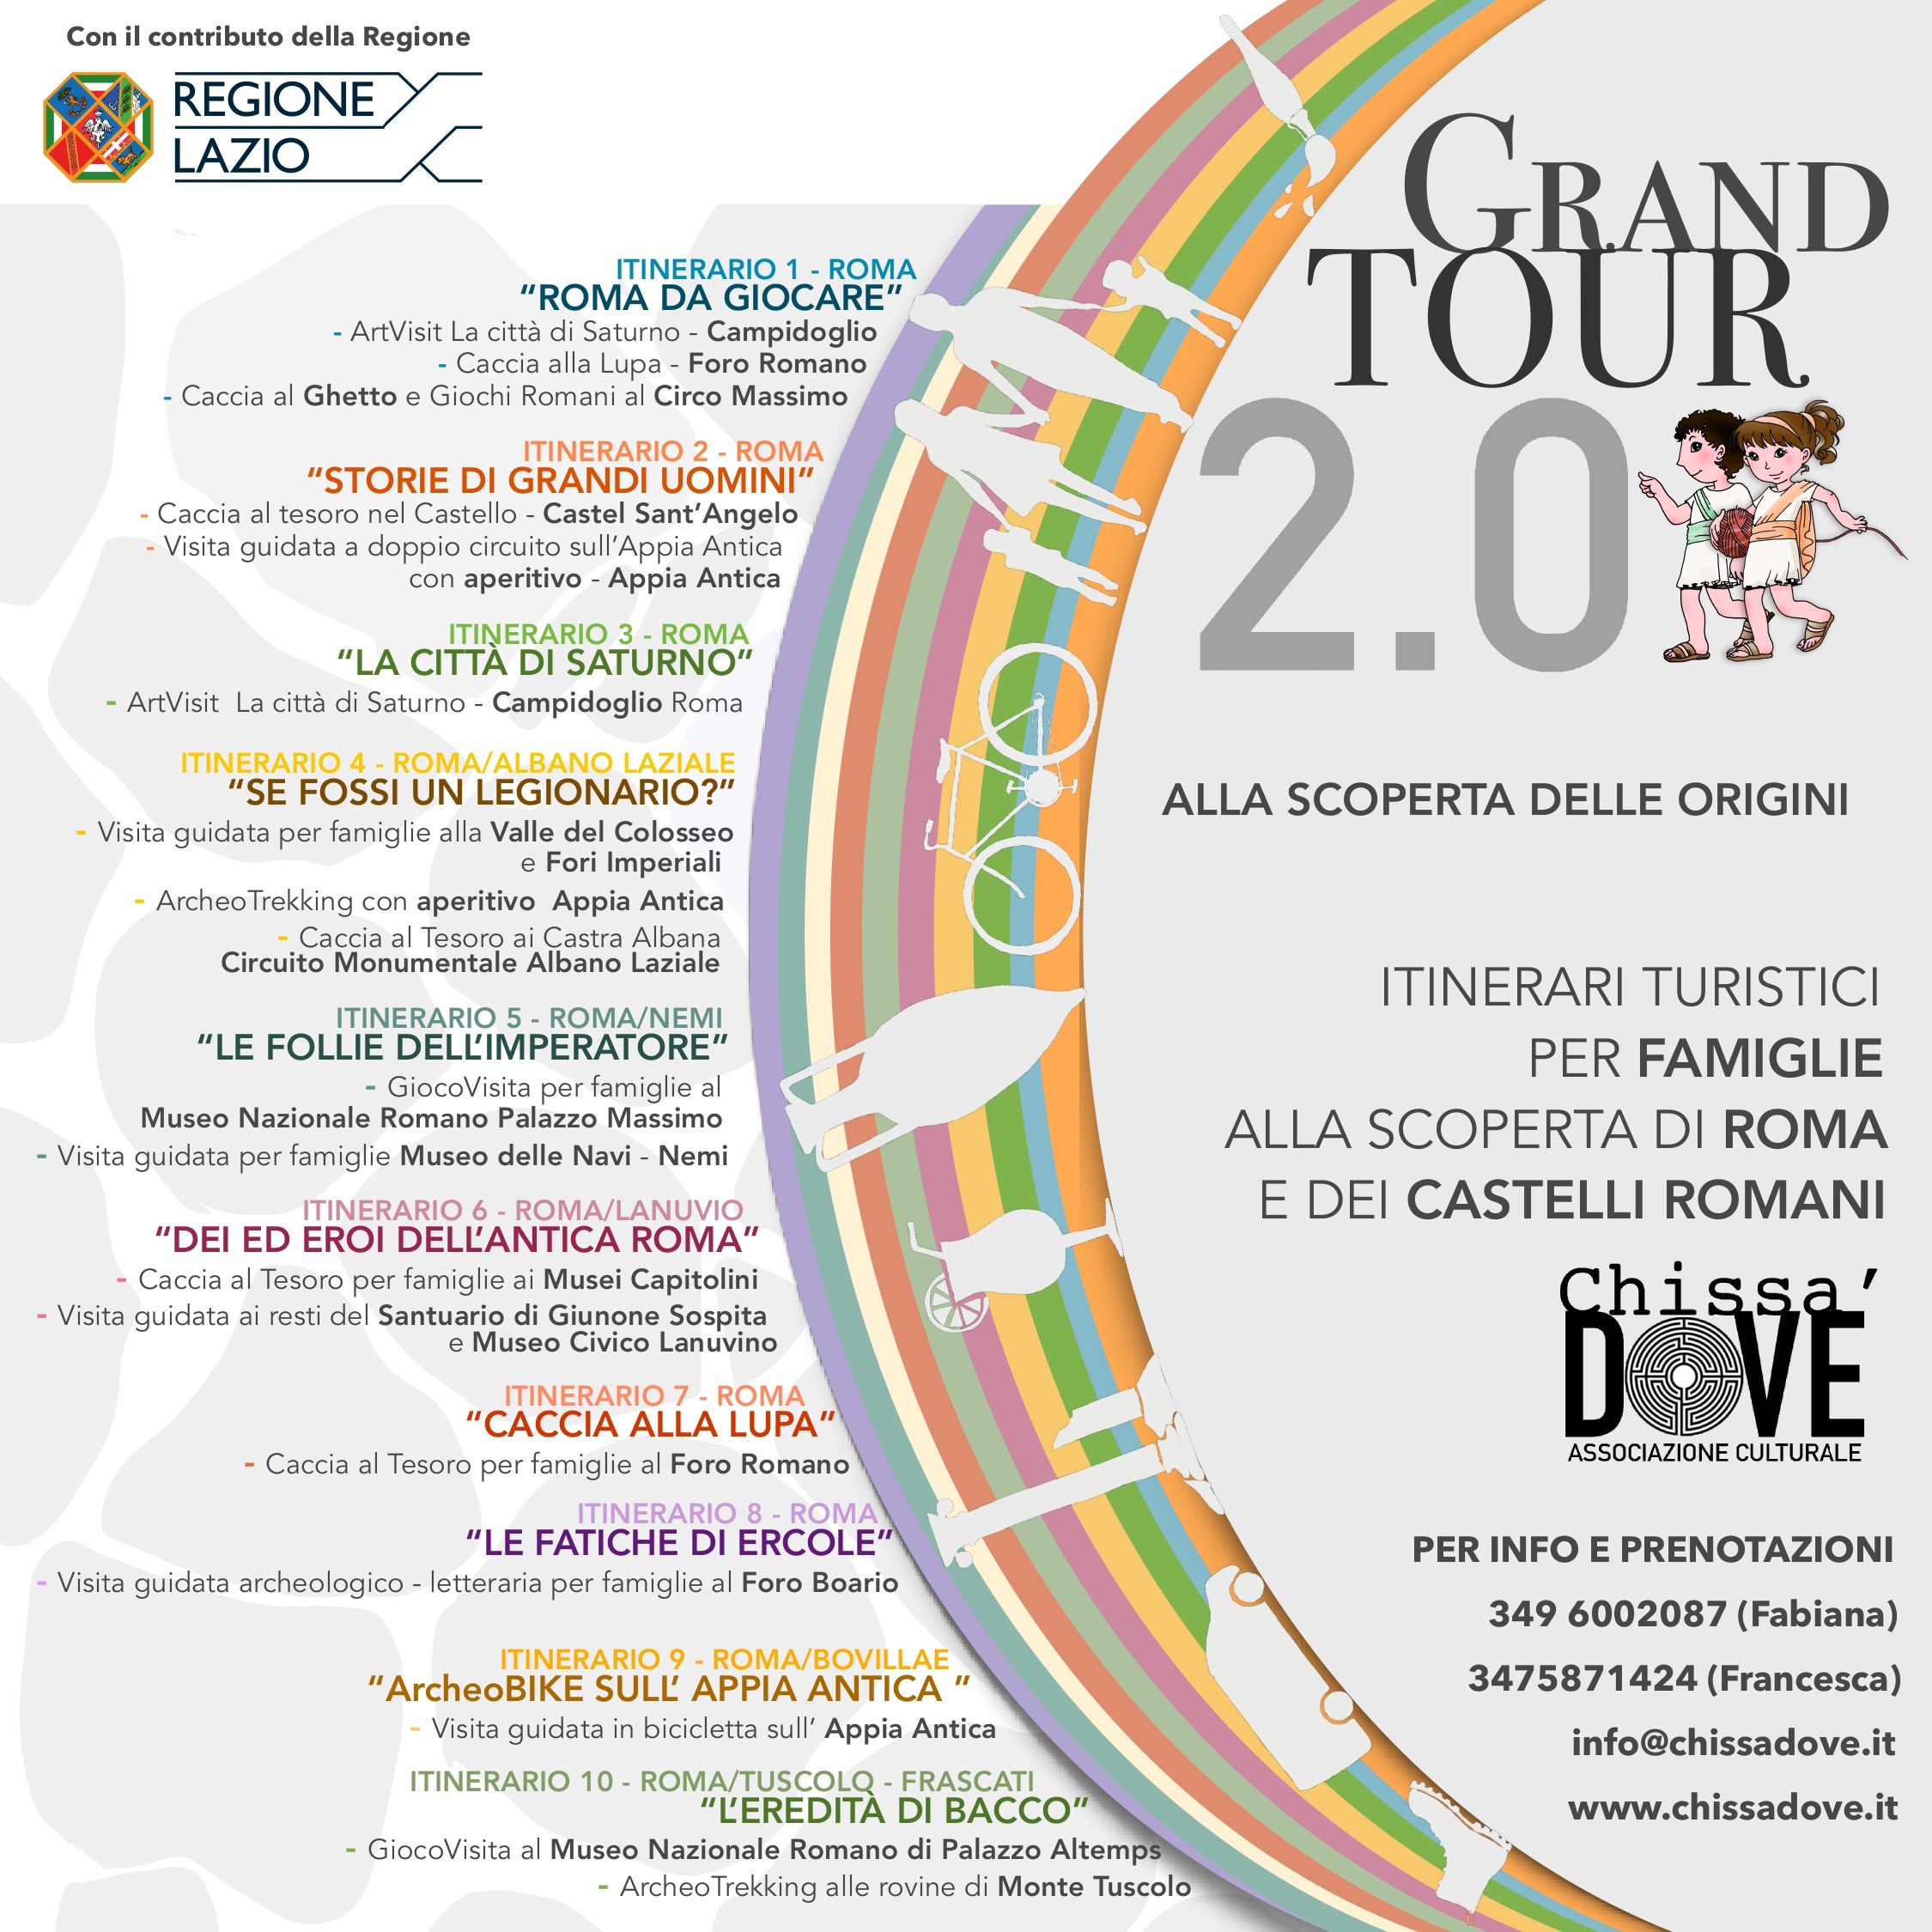 Grand Tour 2.0: da Roma ai Castelli per scoprire (a piedi e in bici) le bellezze archeologiche e paesaggistiche